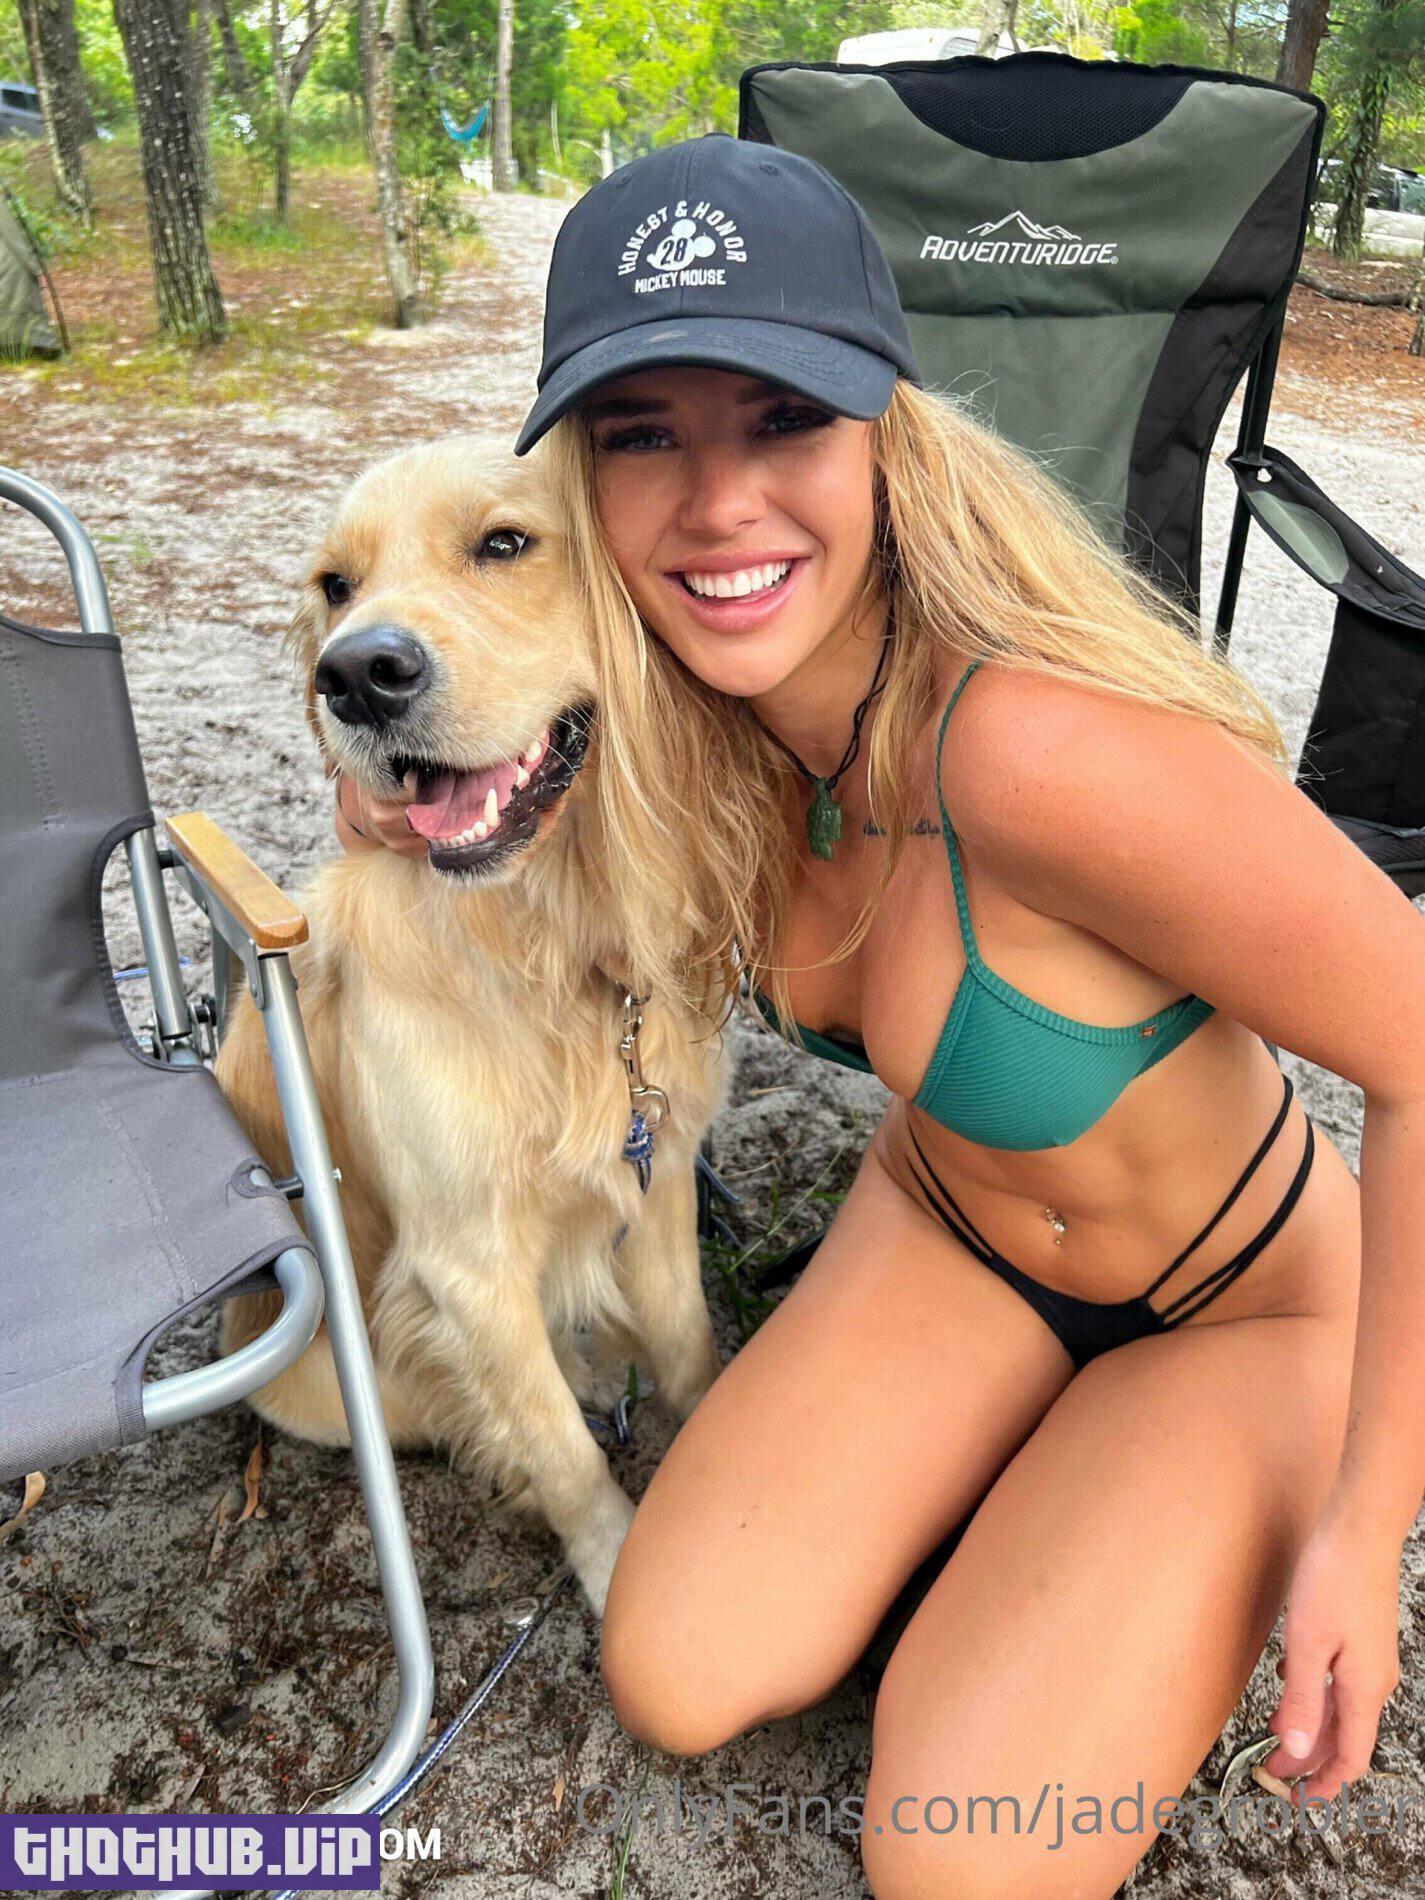 Jade Grobler Outdoor Bikini Selfies Onlyfans Set Leaked